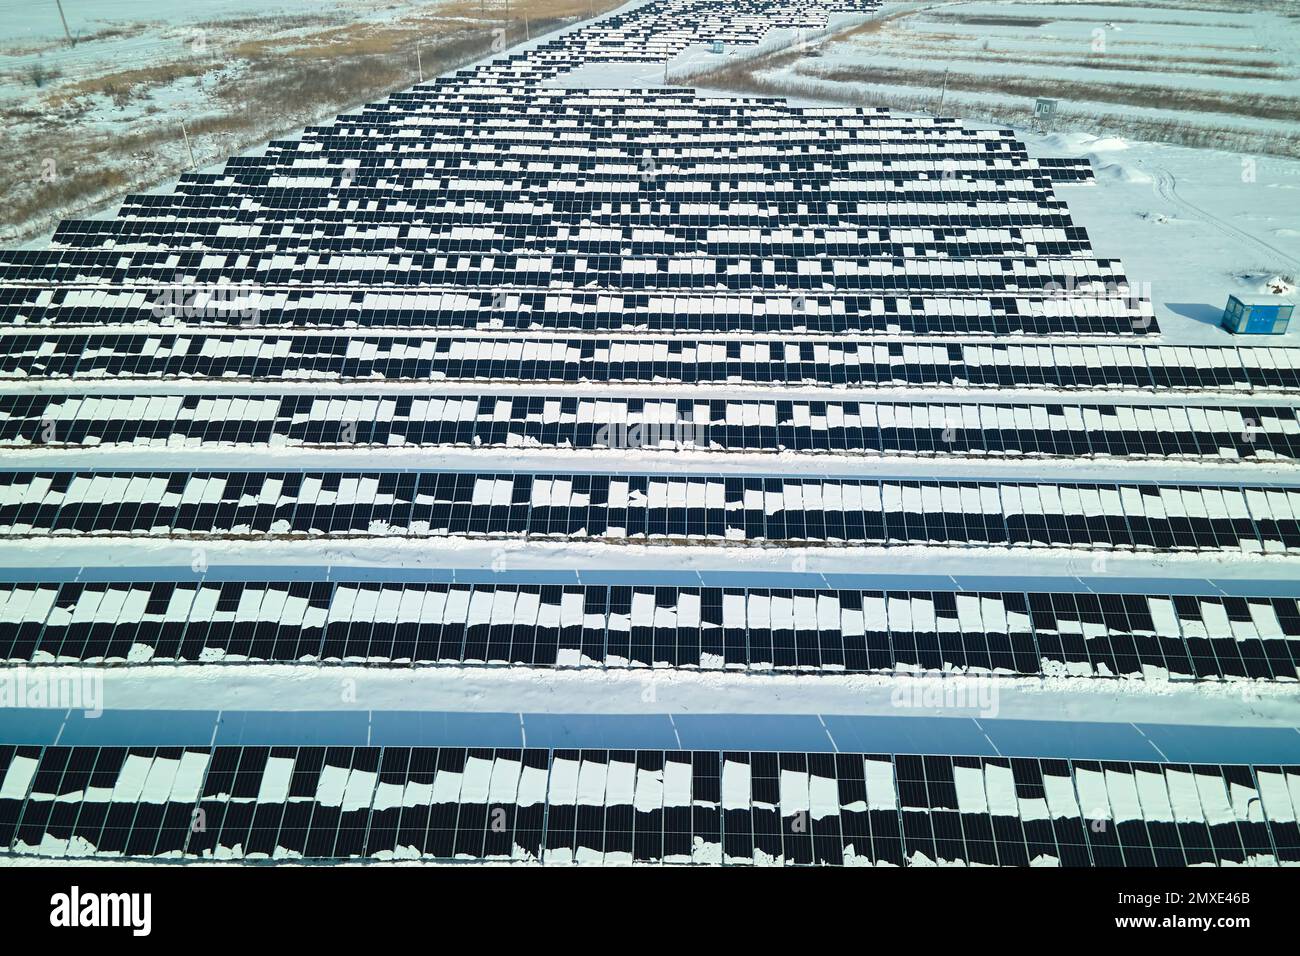 Vue aérienne de la fonte de la neige à partir de panneaux photovoltaïques solaires couverts à une centrale électrique durable pour produire de l'énergie électrique propre. Faible Banque D'Images